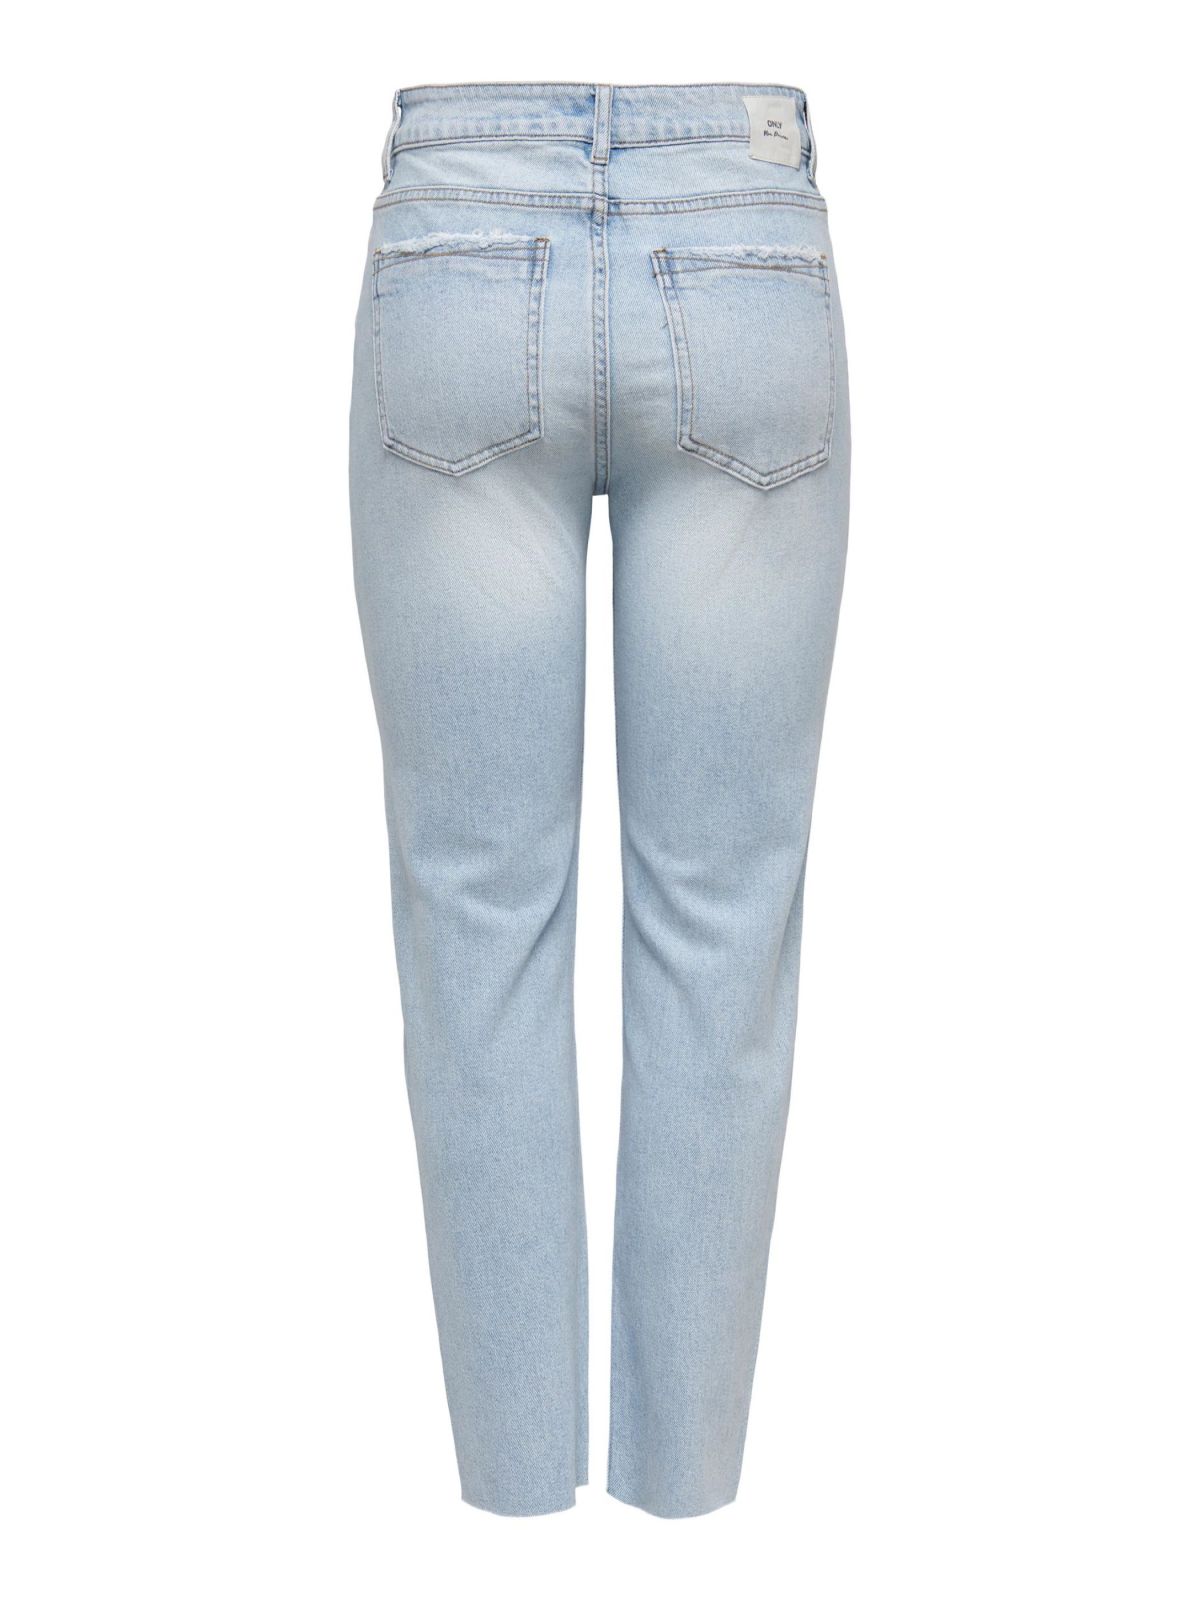  ג'ינס ארוך בגזרה ישרה / נשים של ONLY